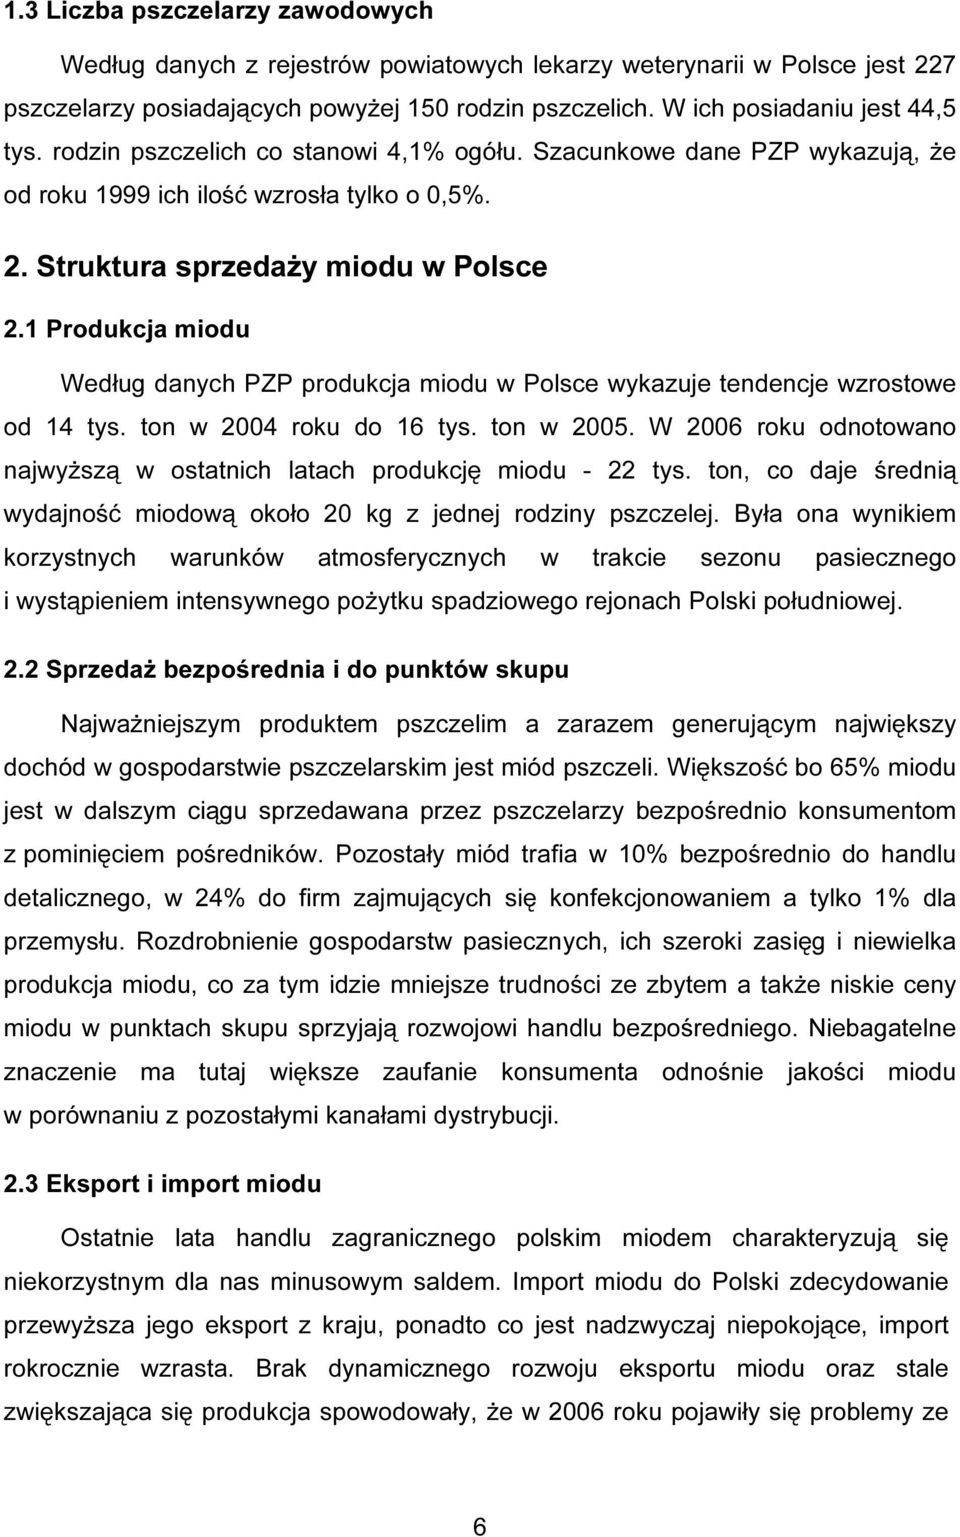 1 Produkcja miodu Według danych PZP produkcja miodu w Polsce wykazuje tendencje wzrostowe od 14 tys. ton w 2004 roku do 16 tys. ton w 2005.